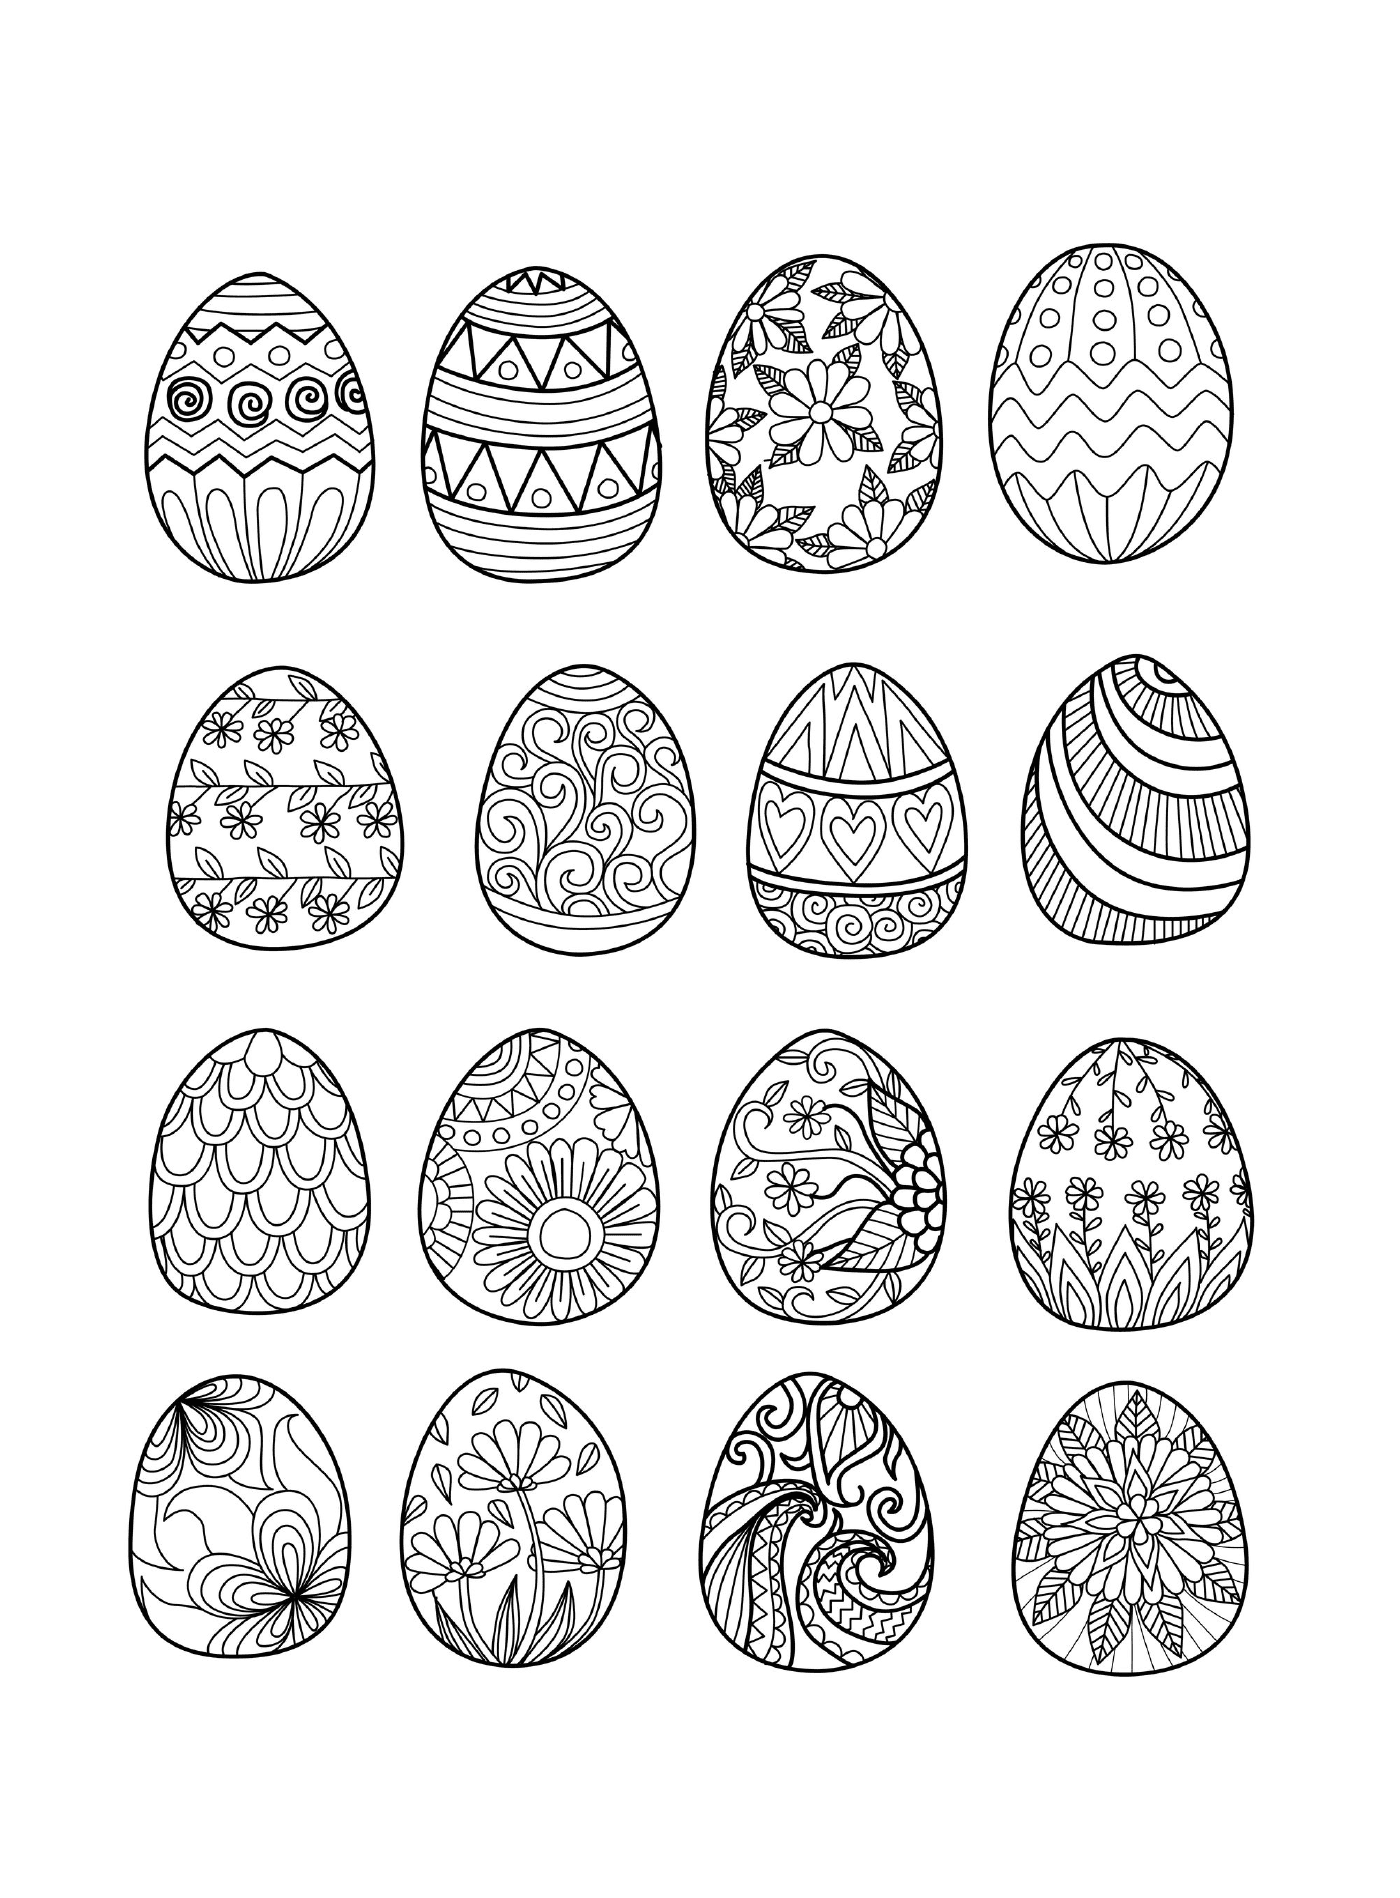  Juego de huevos de Pascua para adultos 